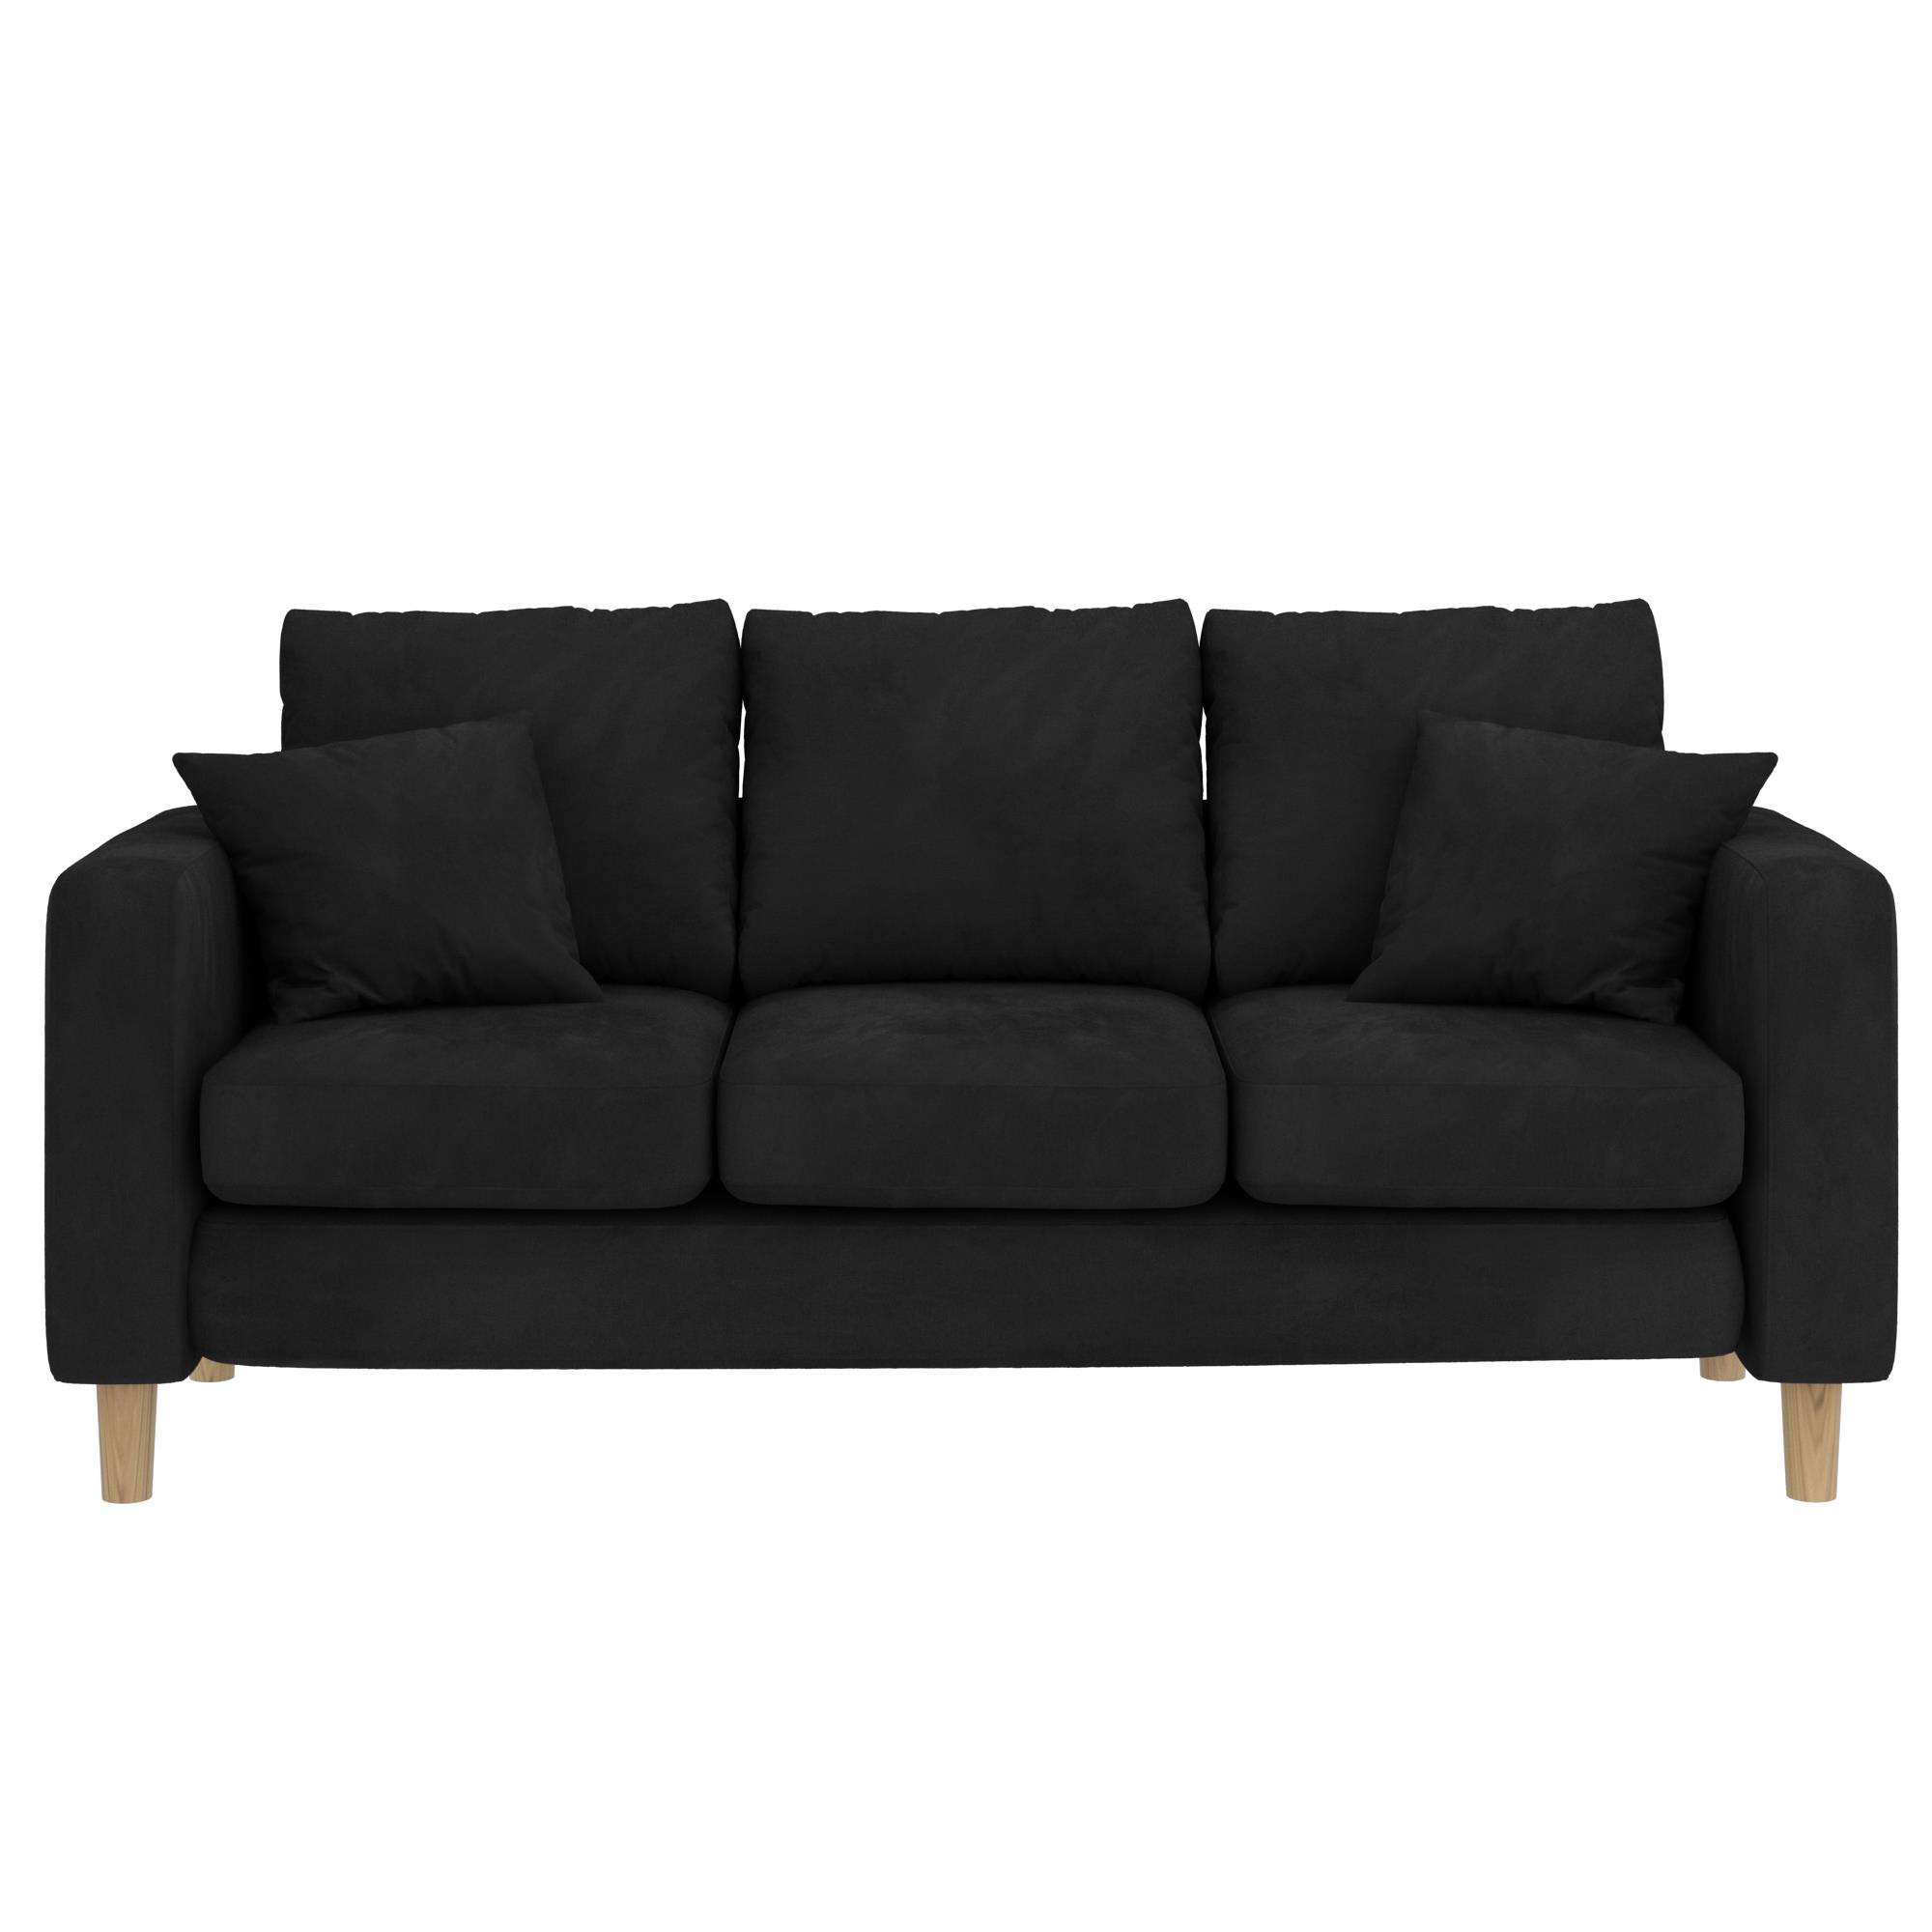 ספה תלת מושבית דגם ליסבון צבע שחור